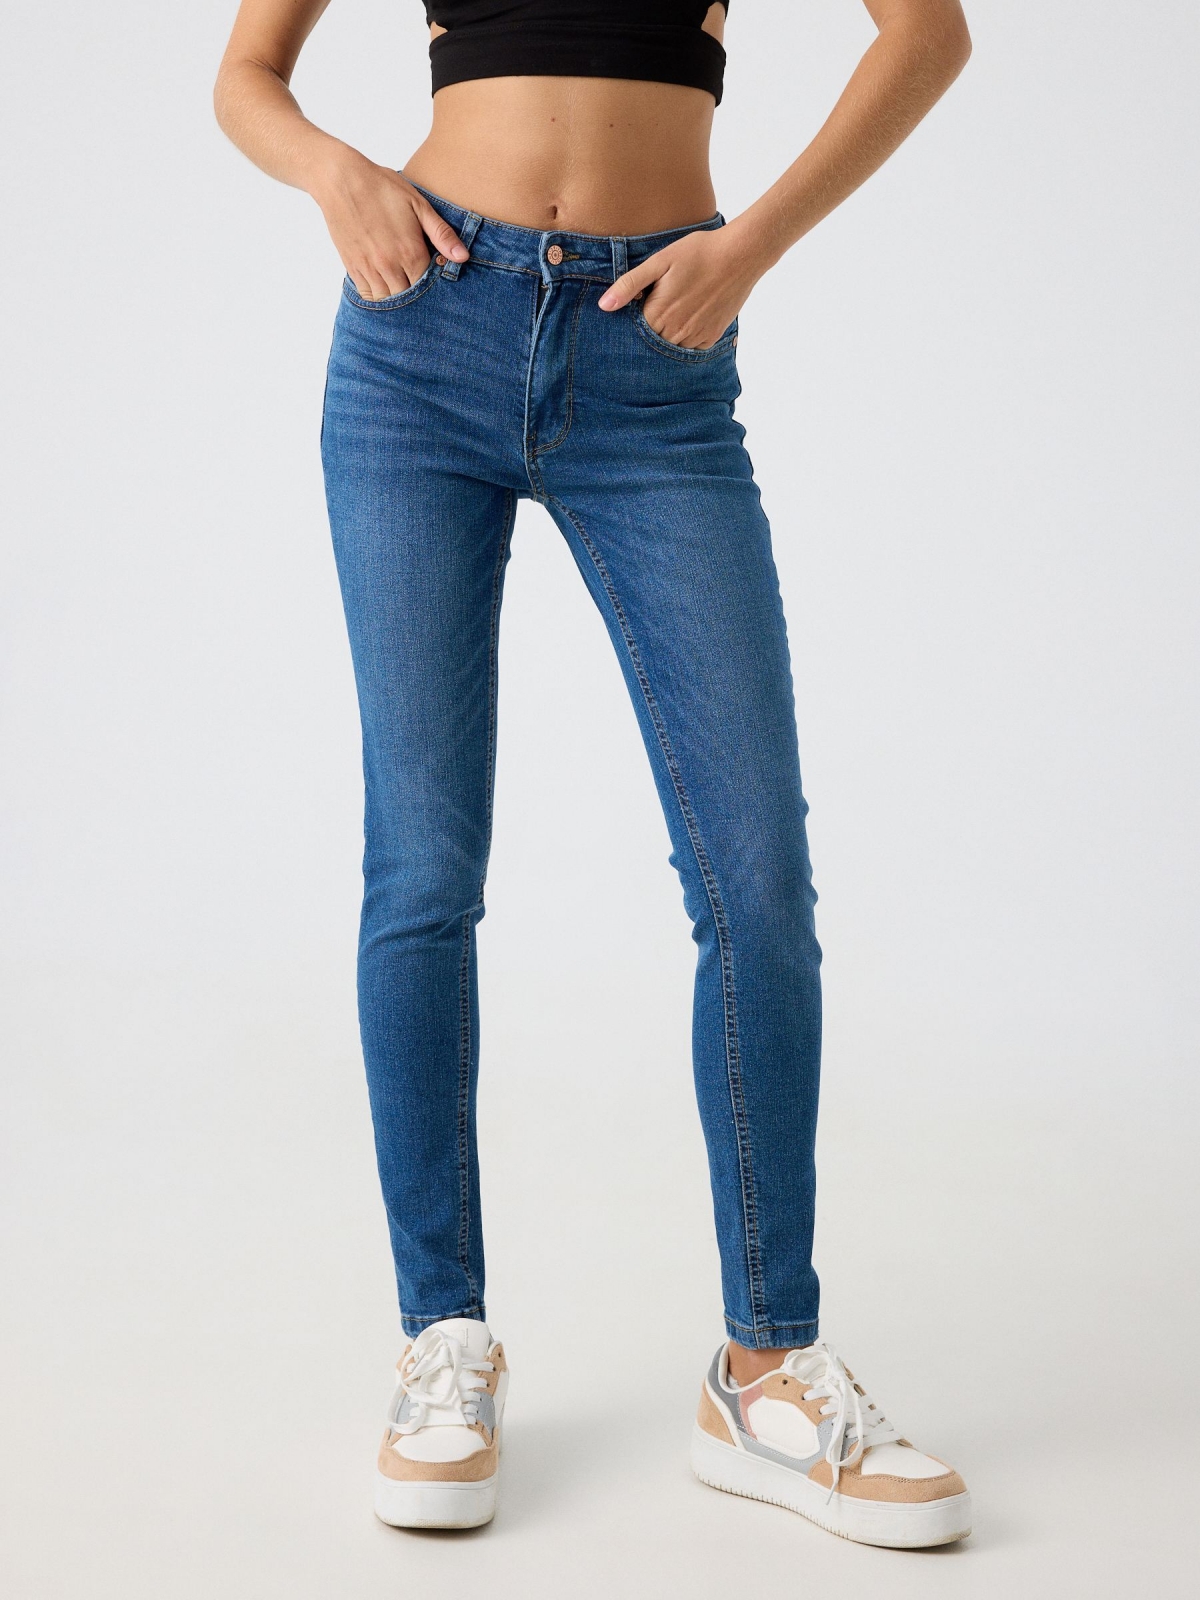 Jeans skinny tiro medio efecto lavado azul ducados vista media frontal